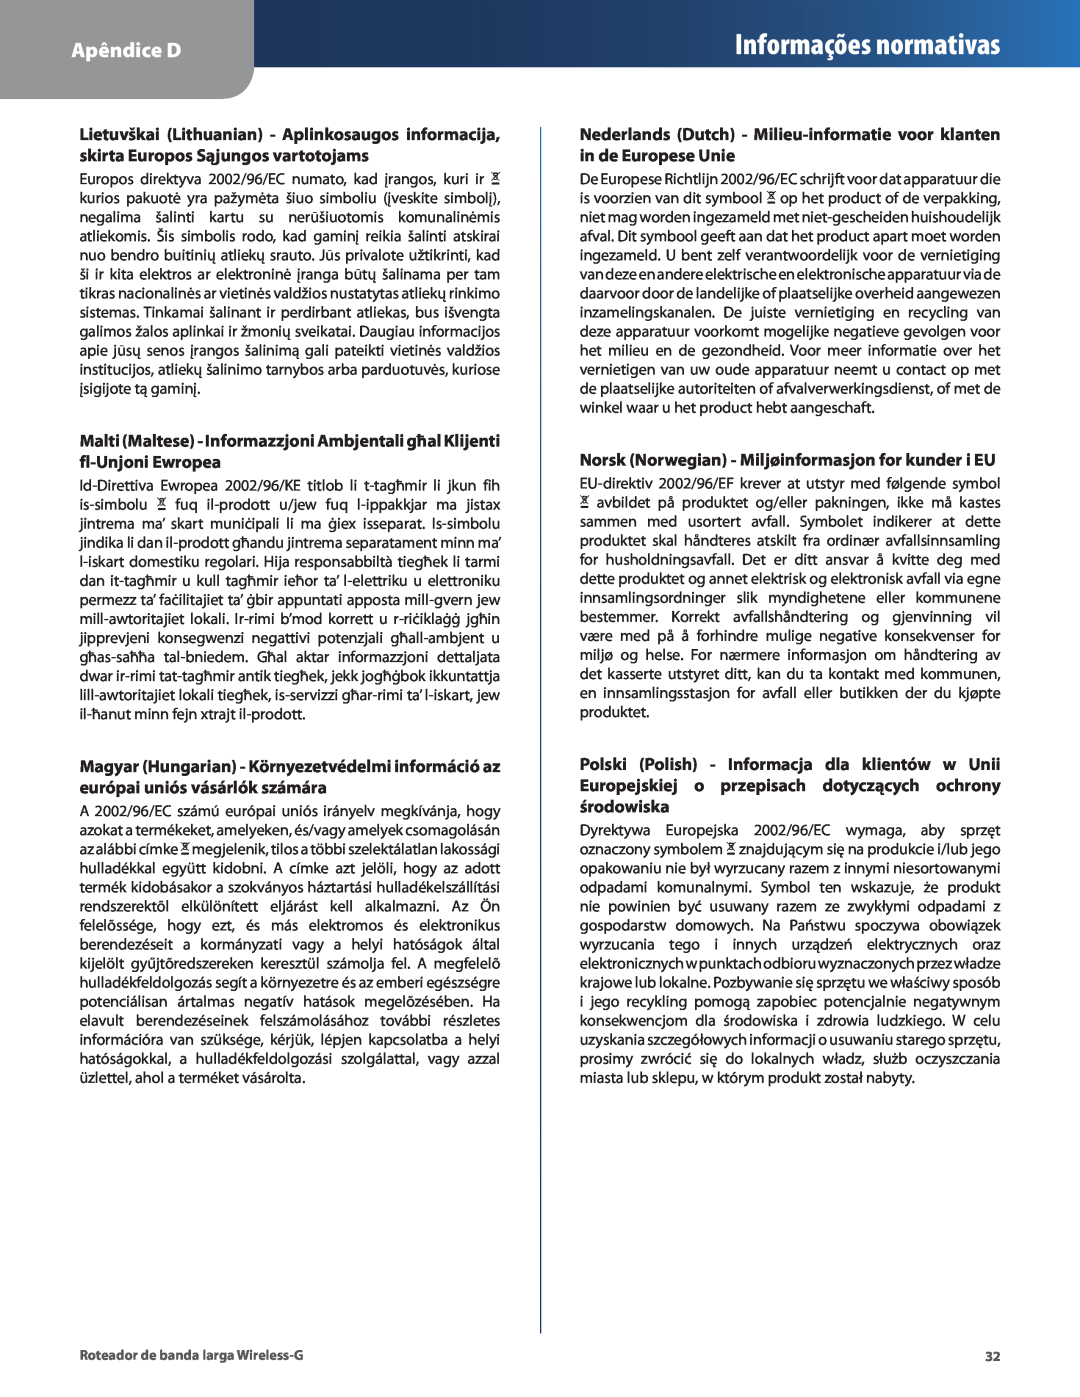 Cisco Systems WRT54G2 manual Informações normativas, Apêndice D 